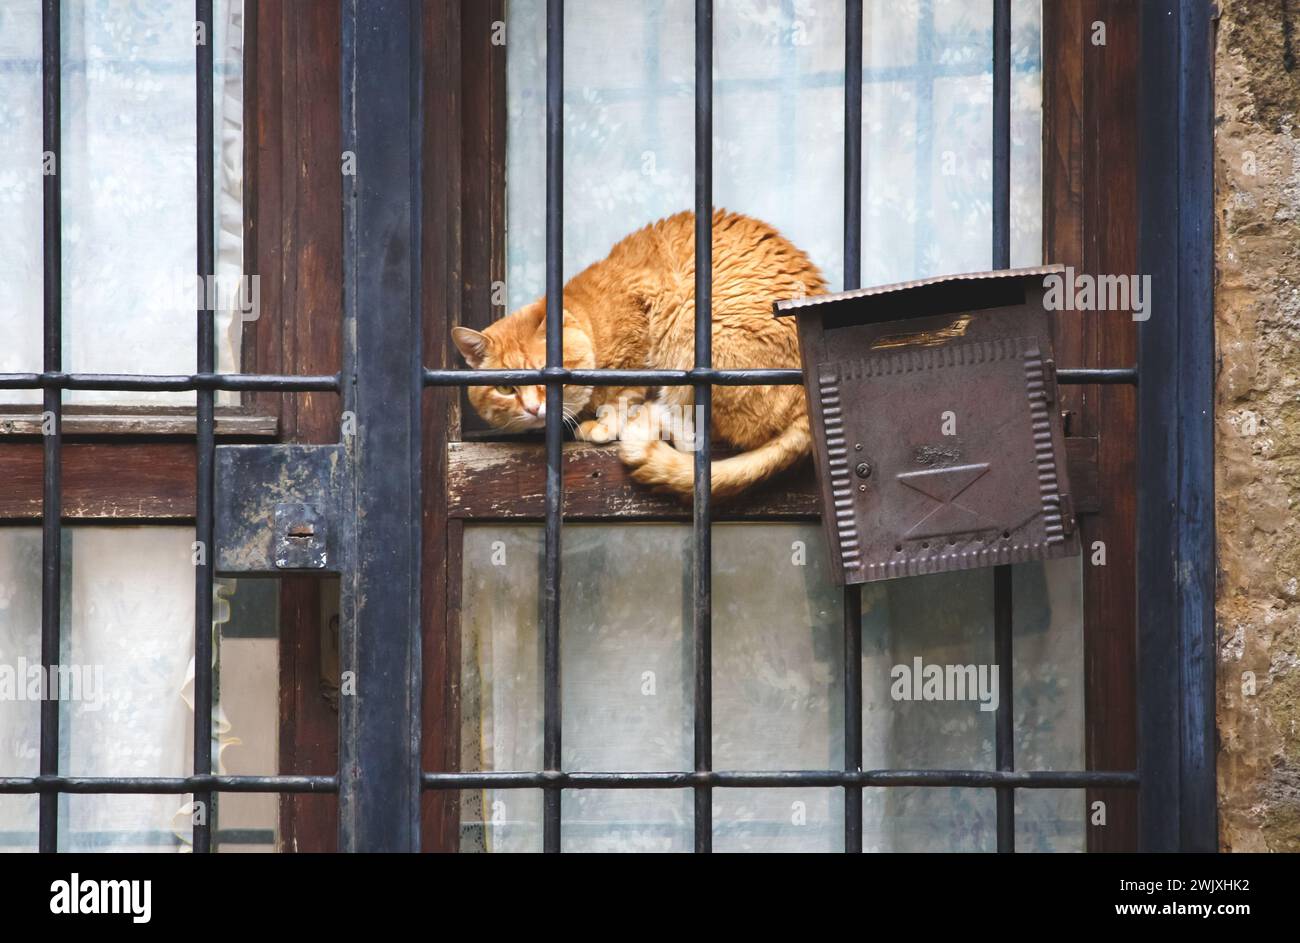 el gato naranja en una postura defensiva se sienta en una ventana detrás de las rejas junto a un buzón de correo, simbolizando un guardián vigilante del correo Foto de stock